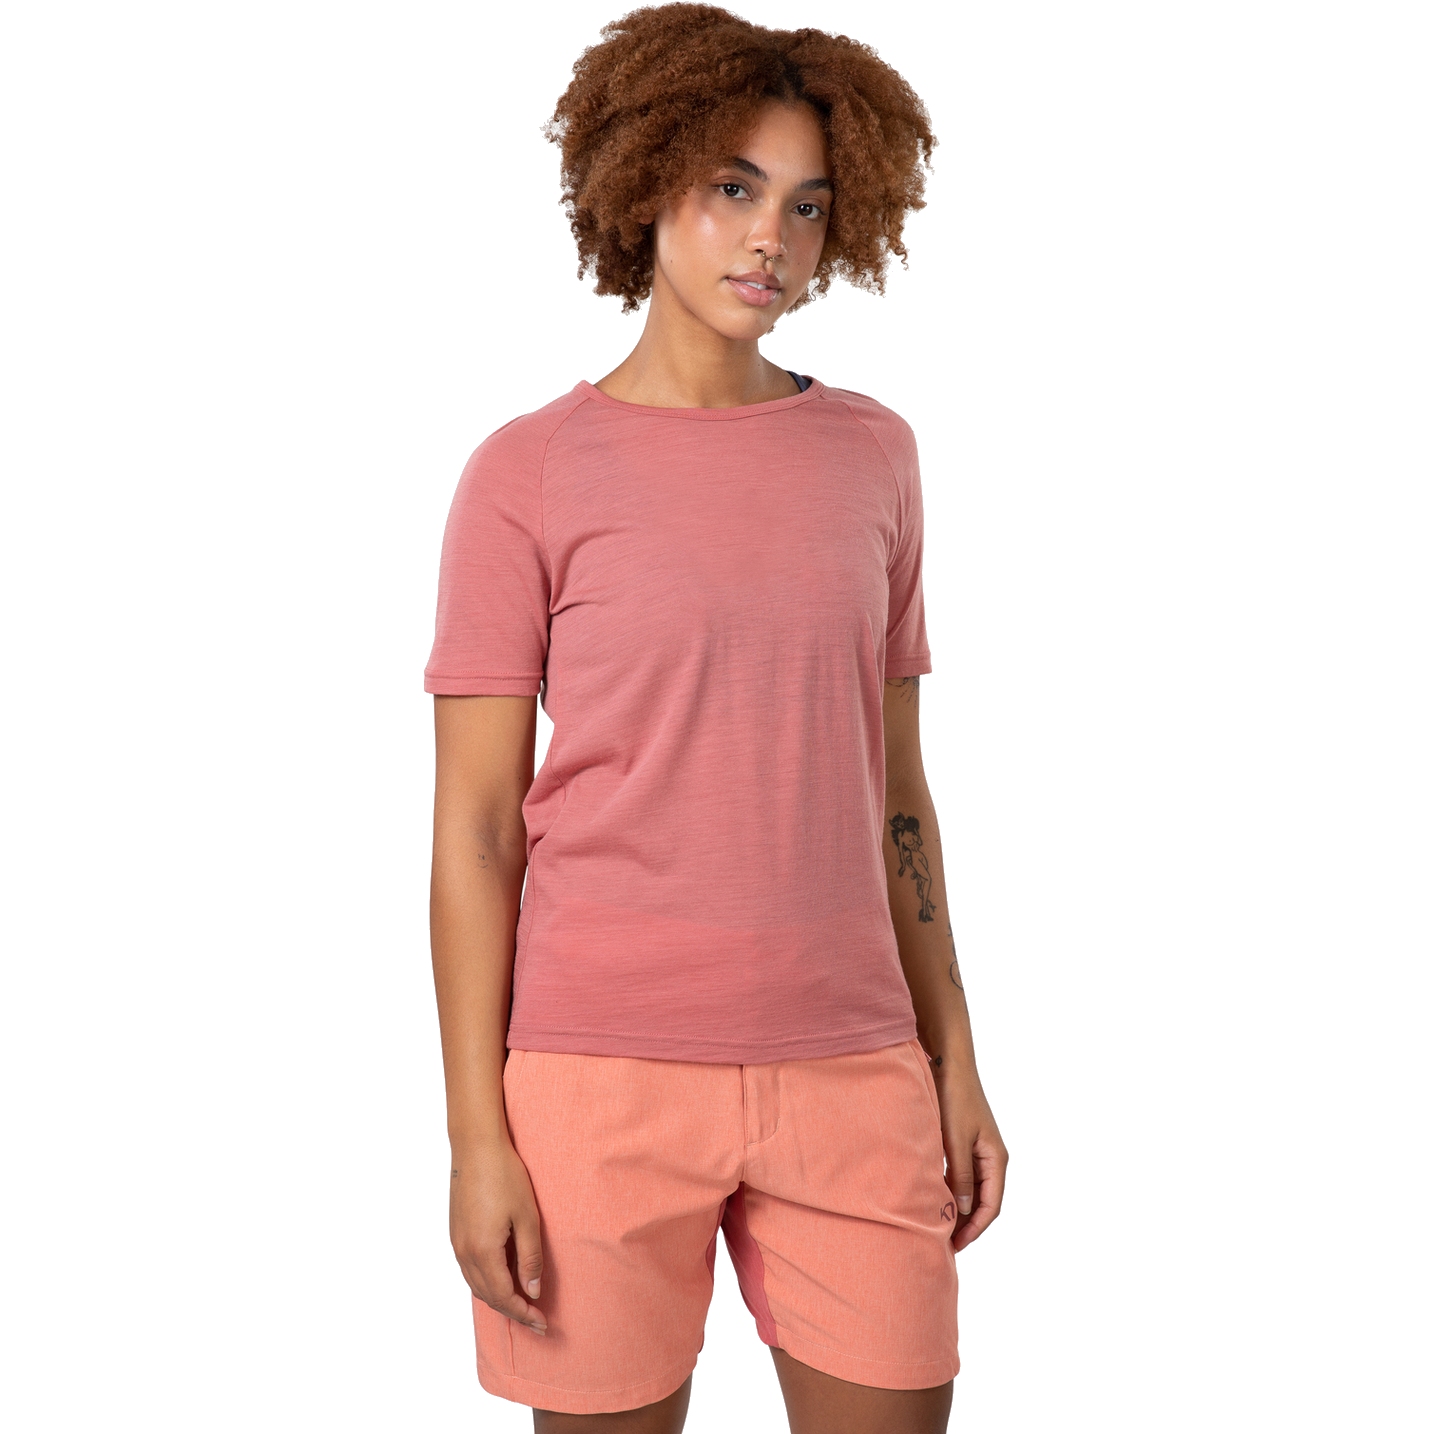 Produktbild von Kari Traa Sanne Wool T-Shirt Damen - dark dusty orange pink